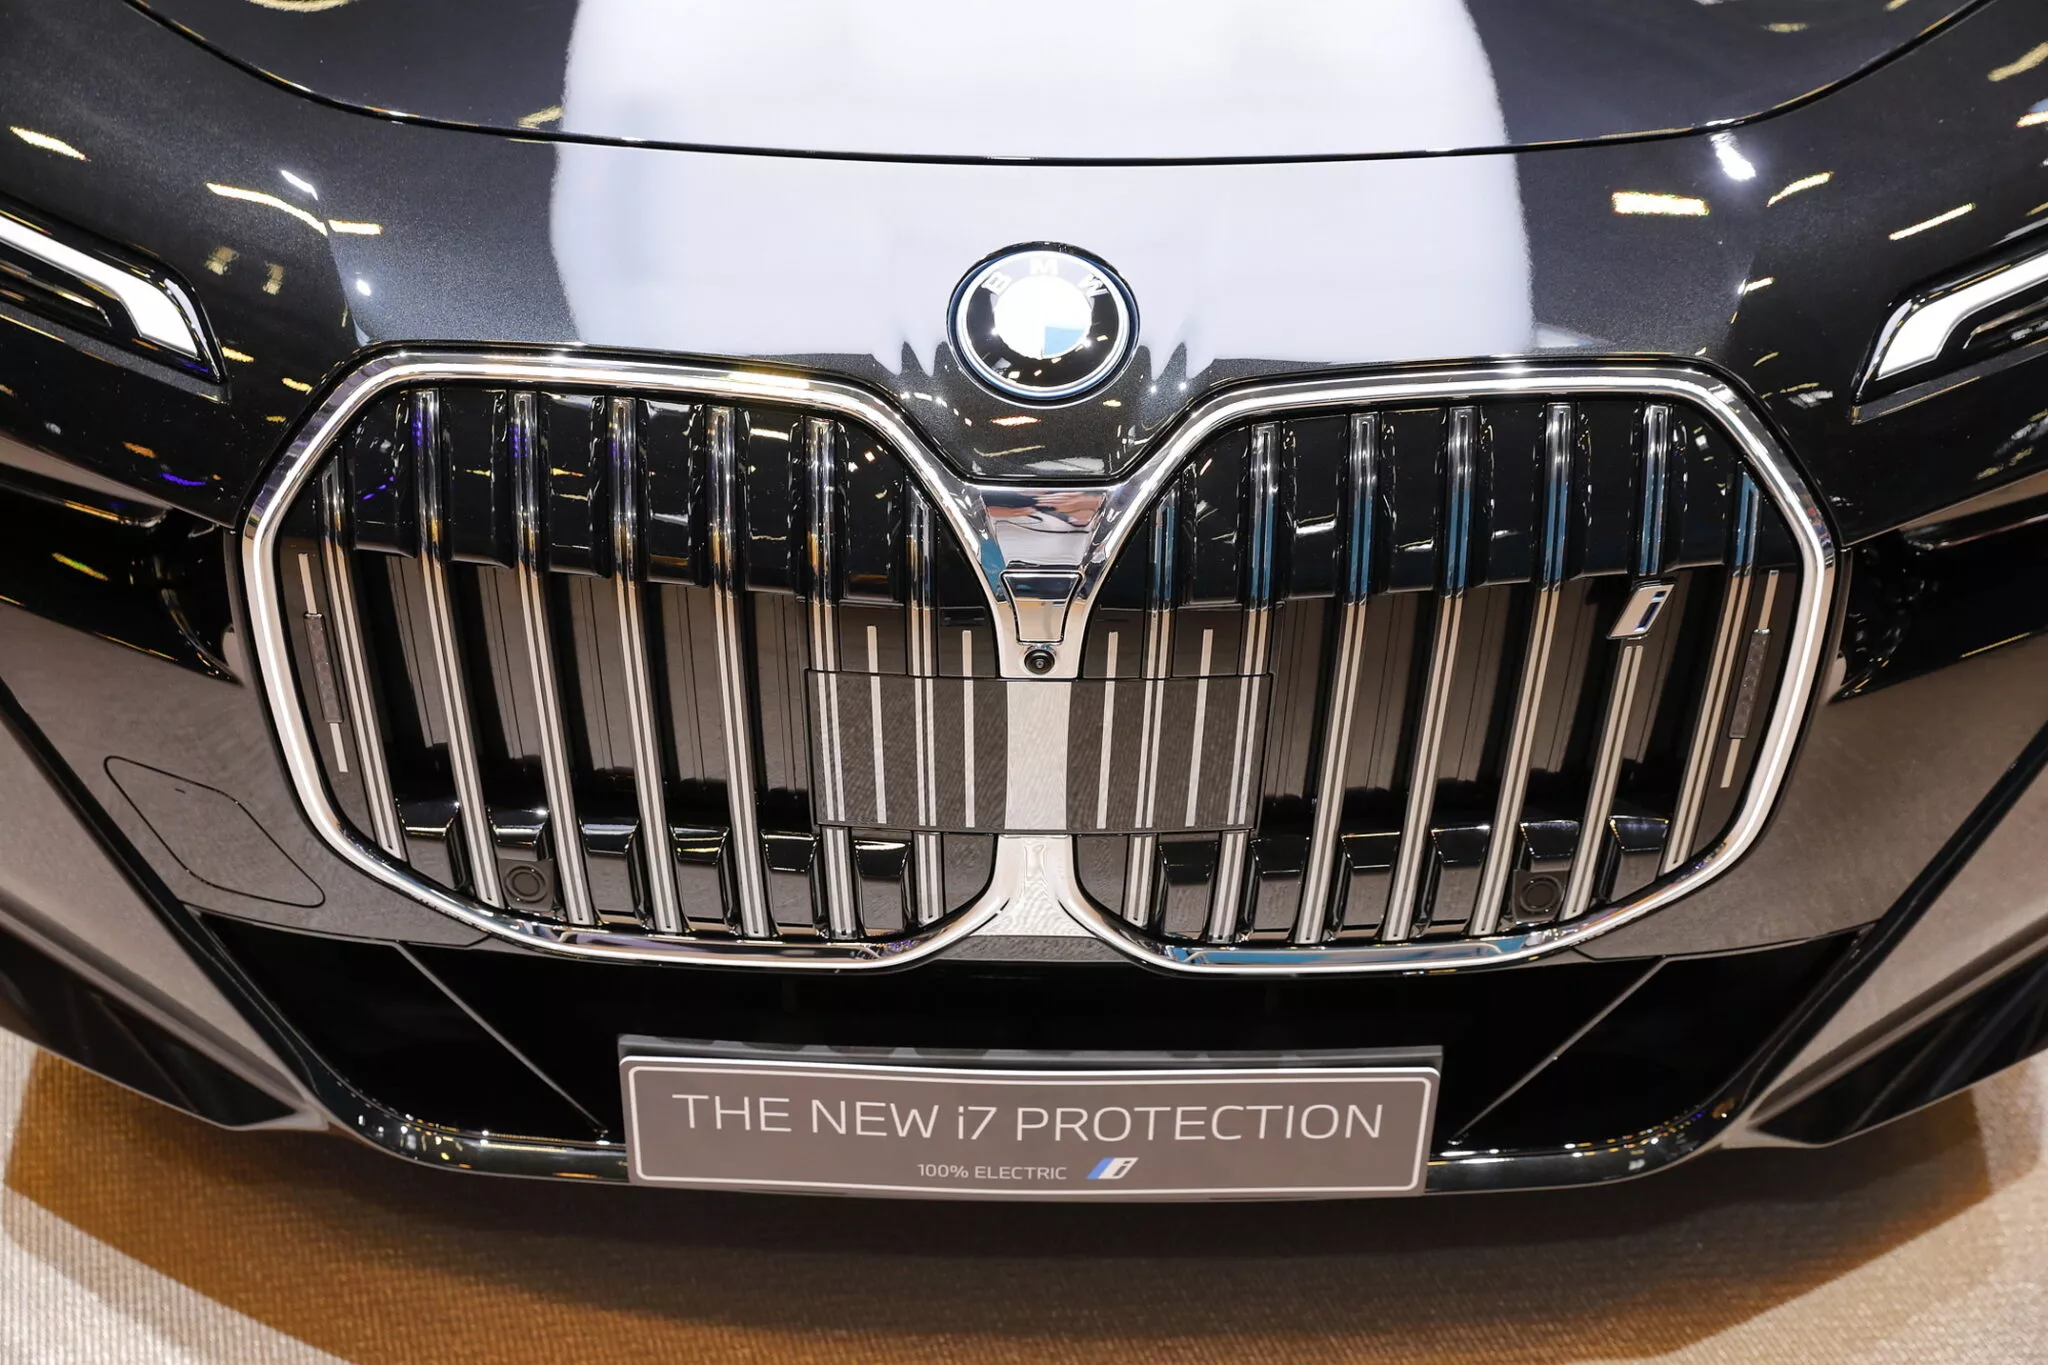 بي ام دبليو i7 Protection الجديدة هي أول سيدان كهربائية مصفحة في العالم 19